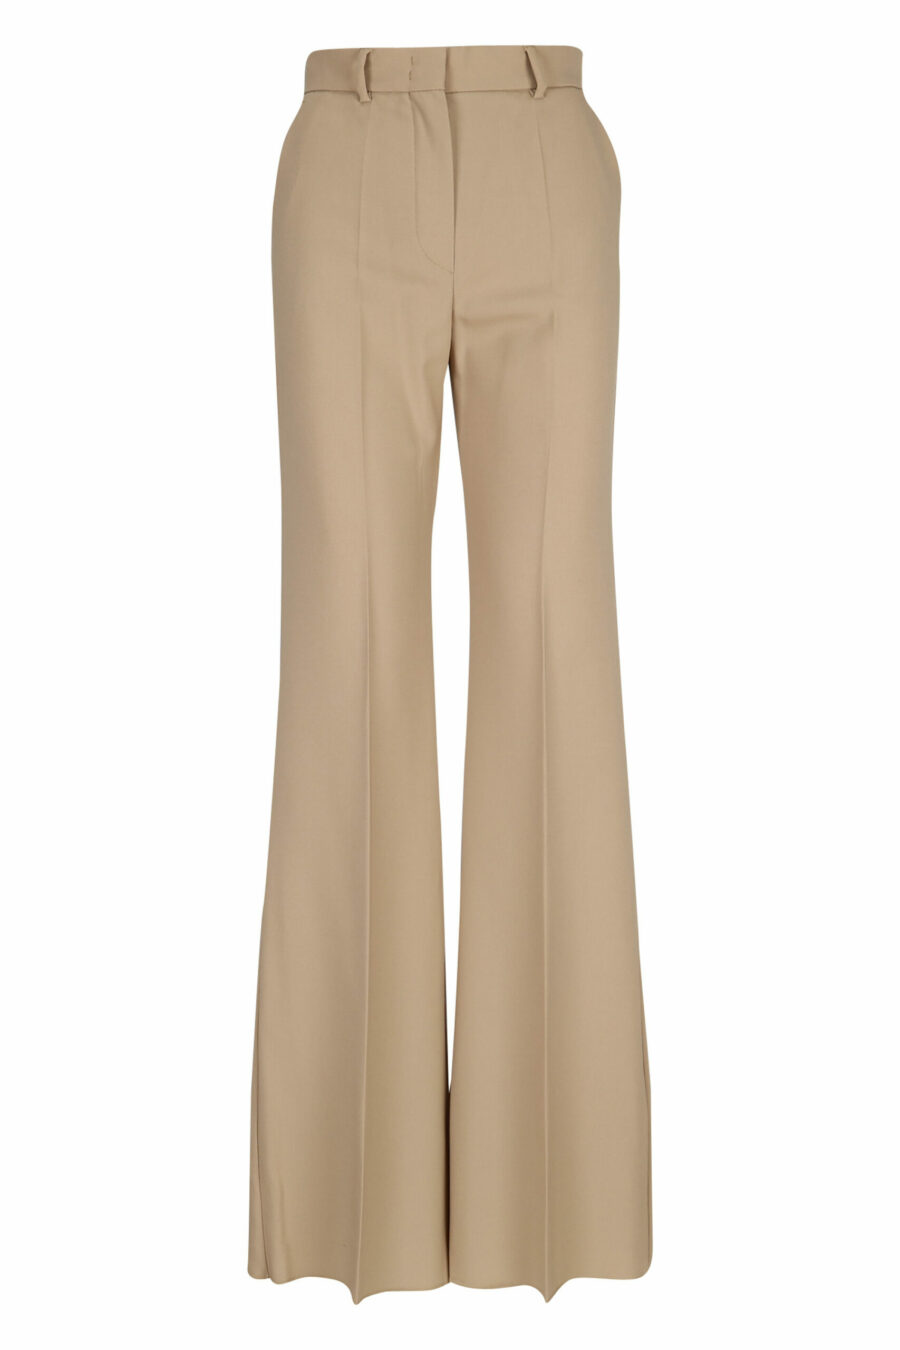 Pantalon large de couleur beige - 21310141060132 scaled